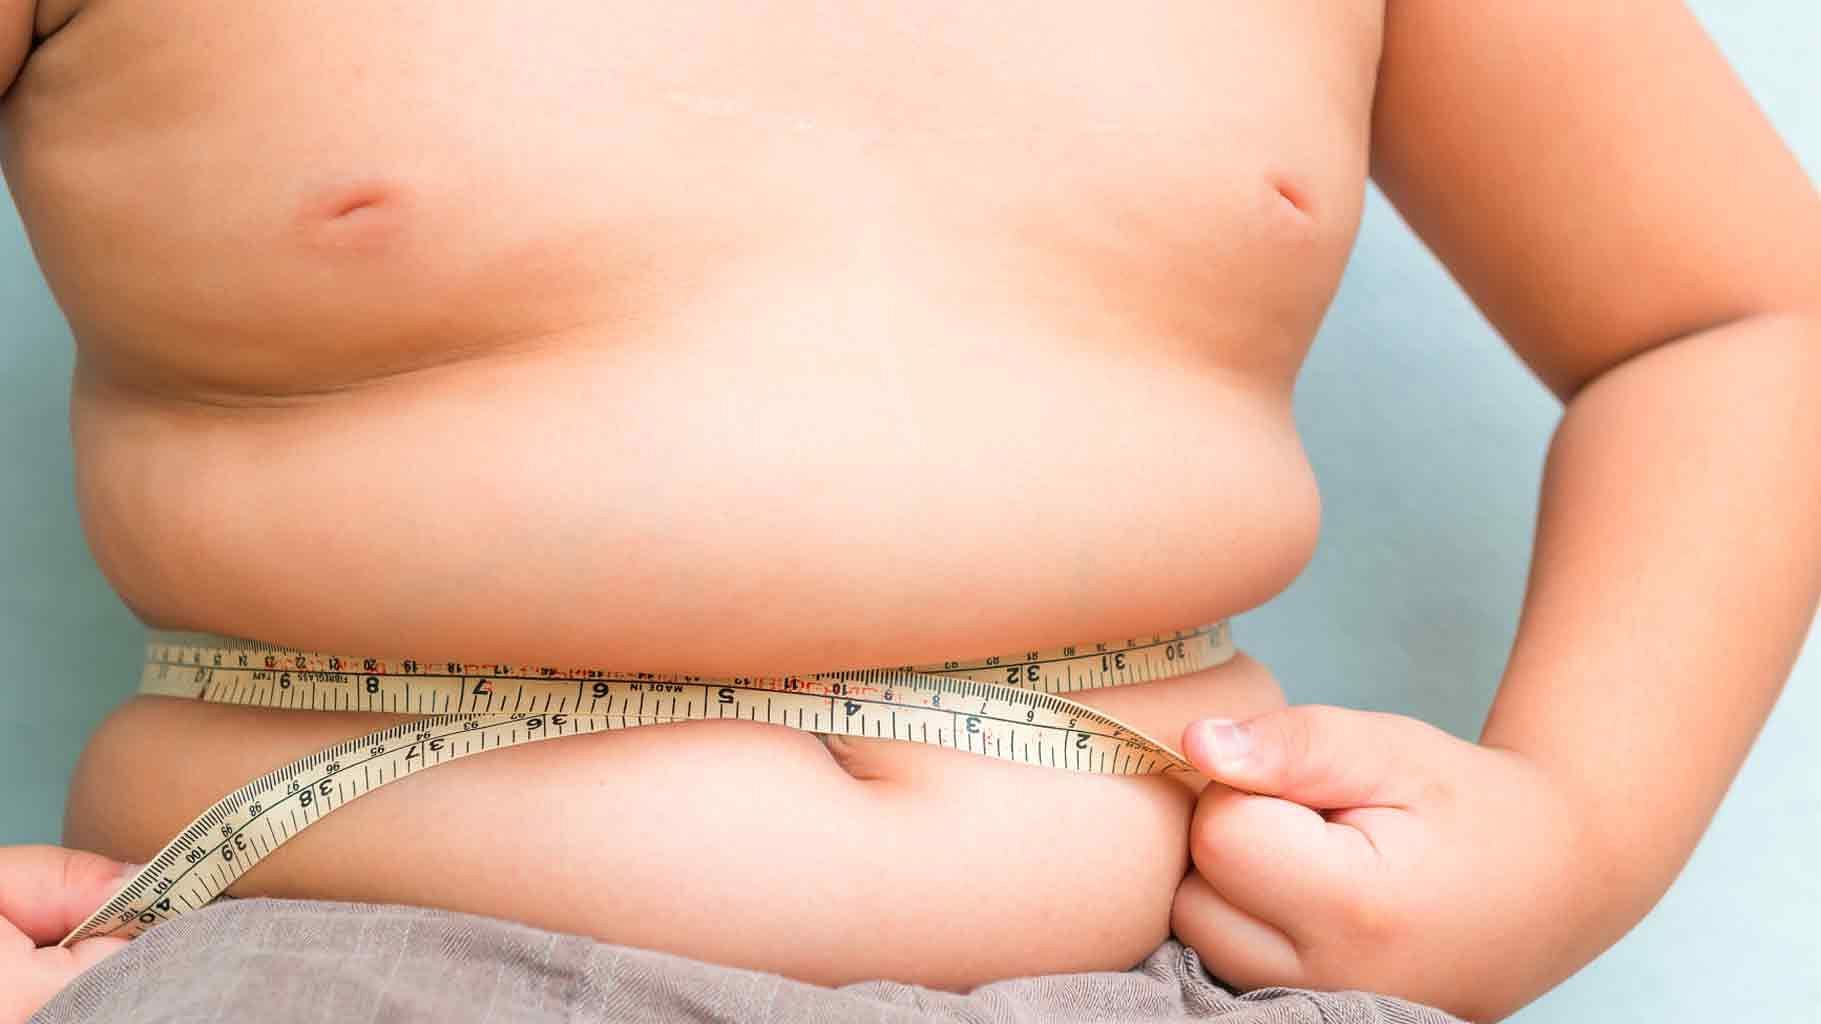 बचपन में अस्थमा होने के पीछे मोटापा एकमात्र कारण हो सकता है